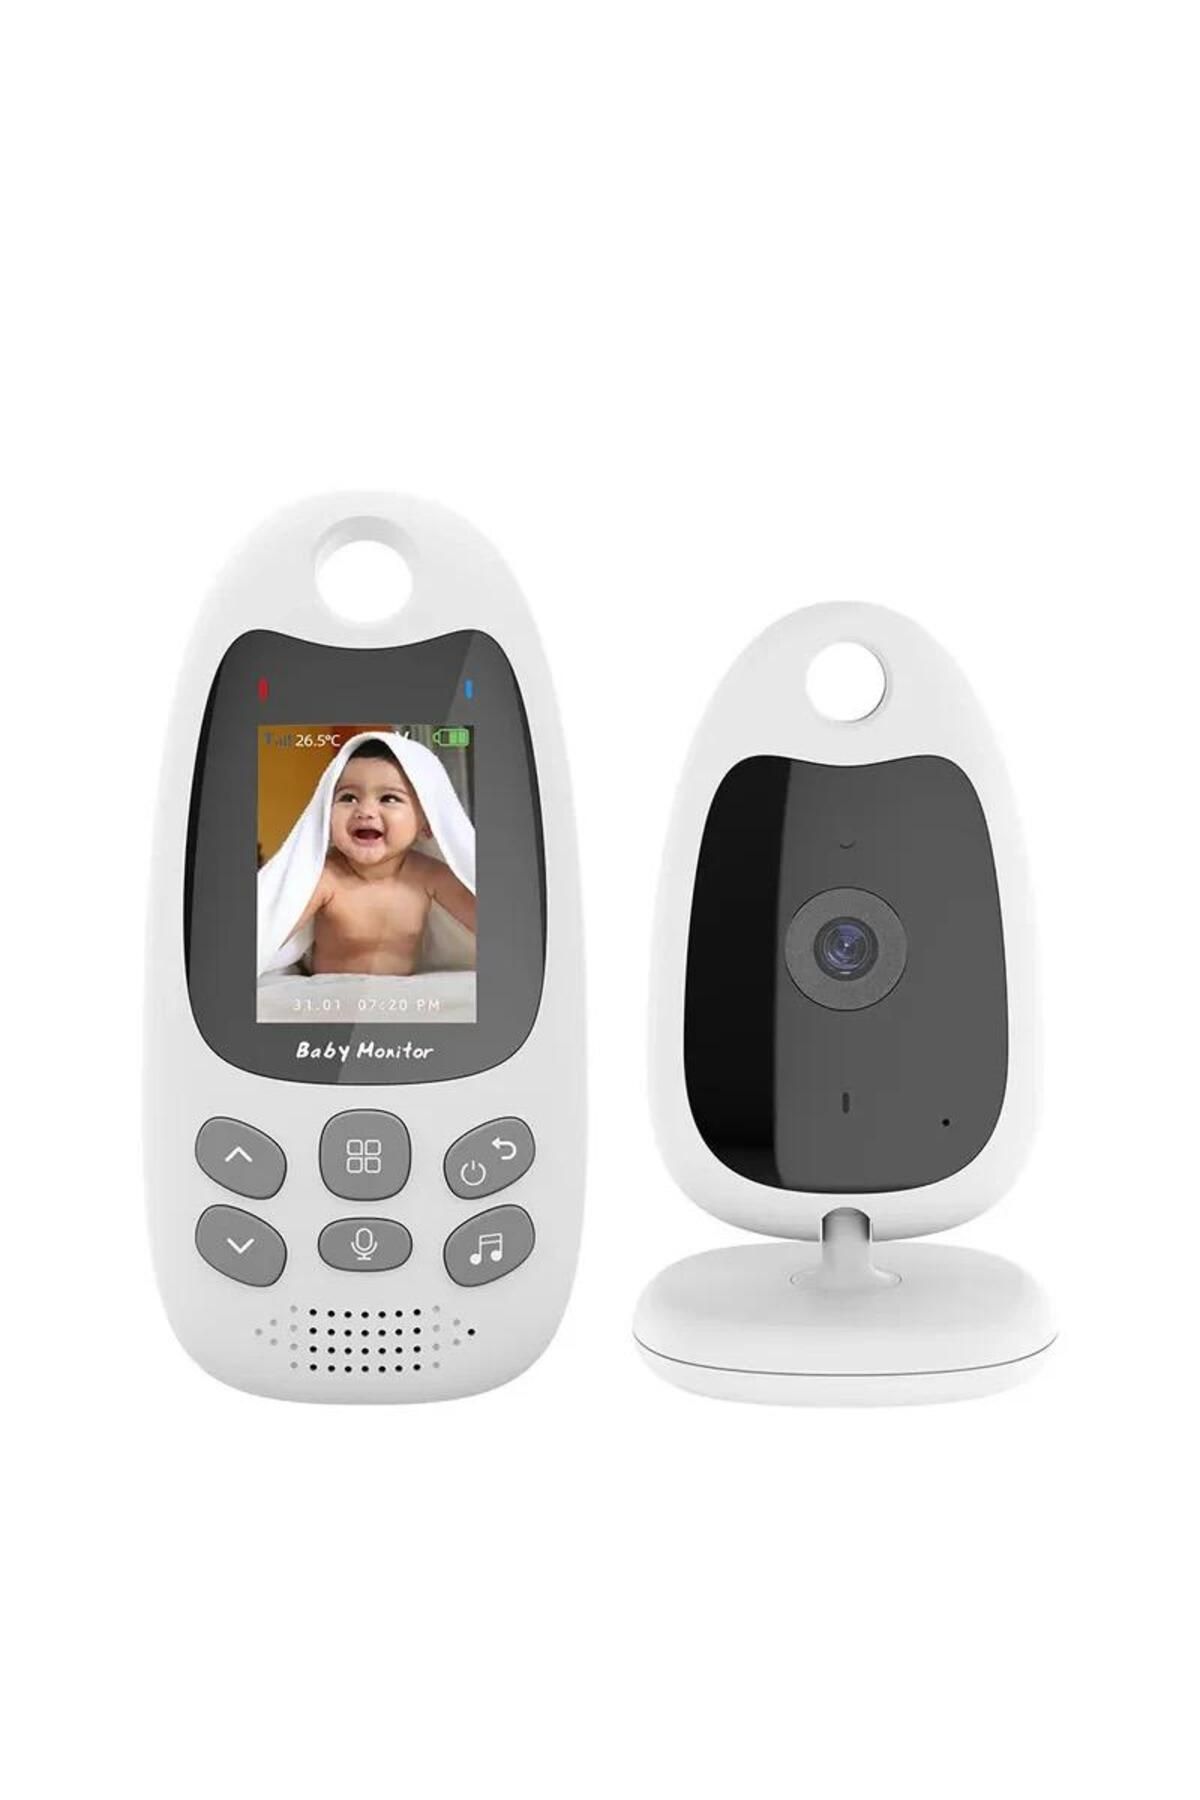 Laxsam Ekranlı Gece Görüşlü Monitörlü Bebek Kontrol Kamerası vb610